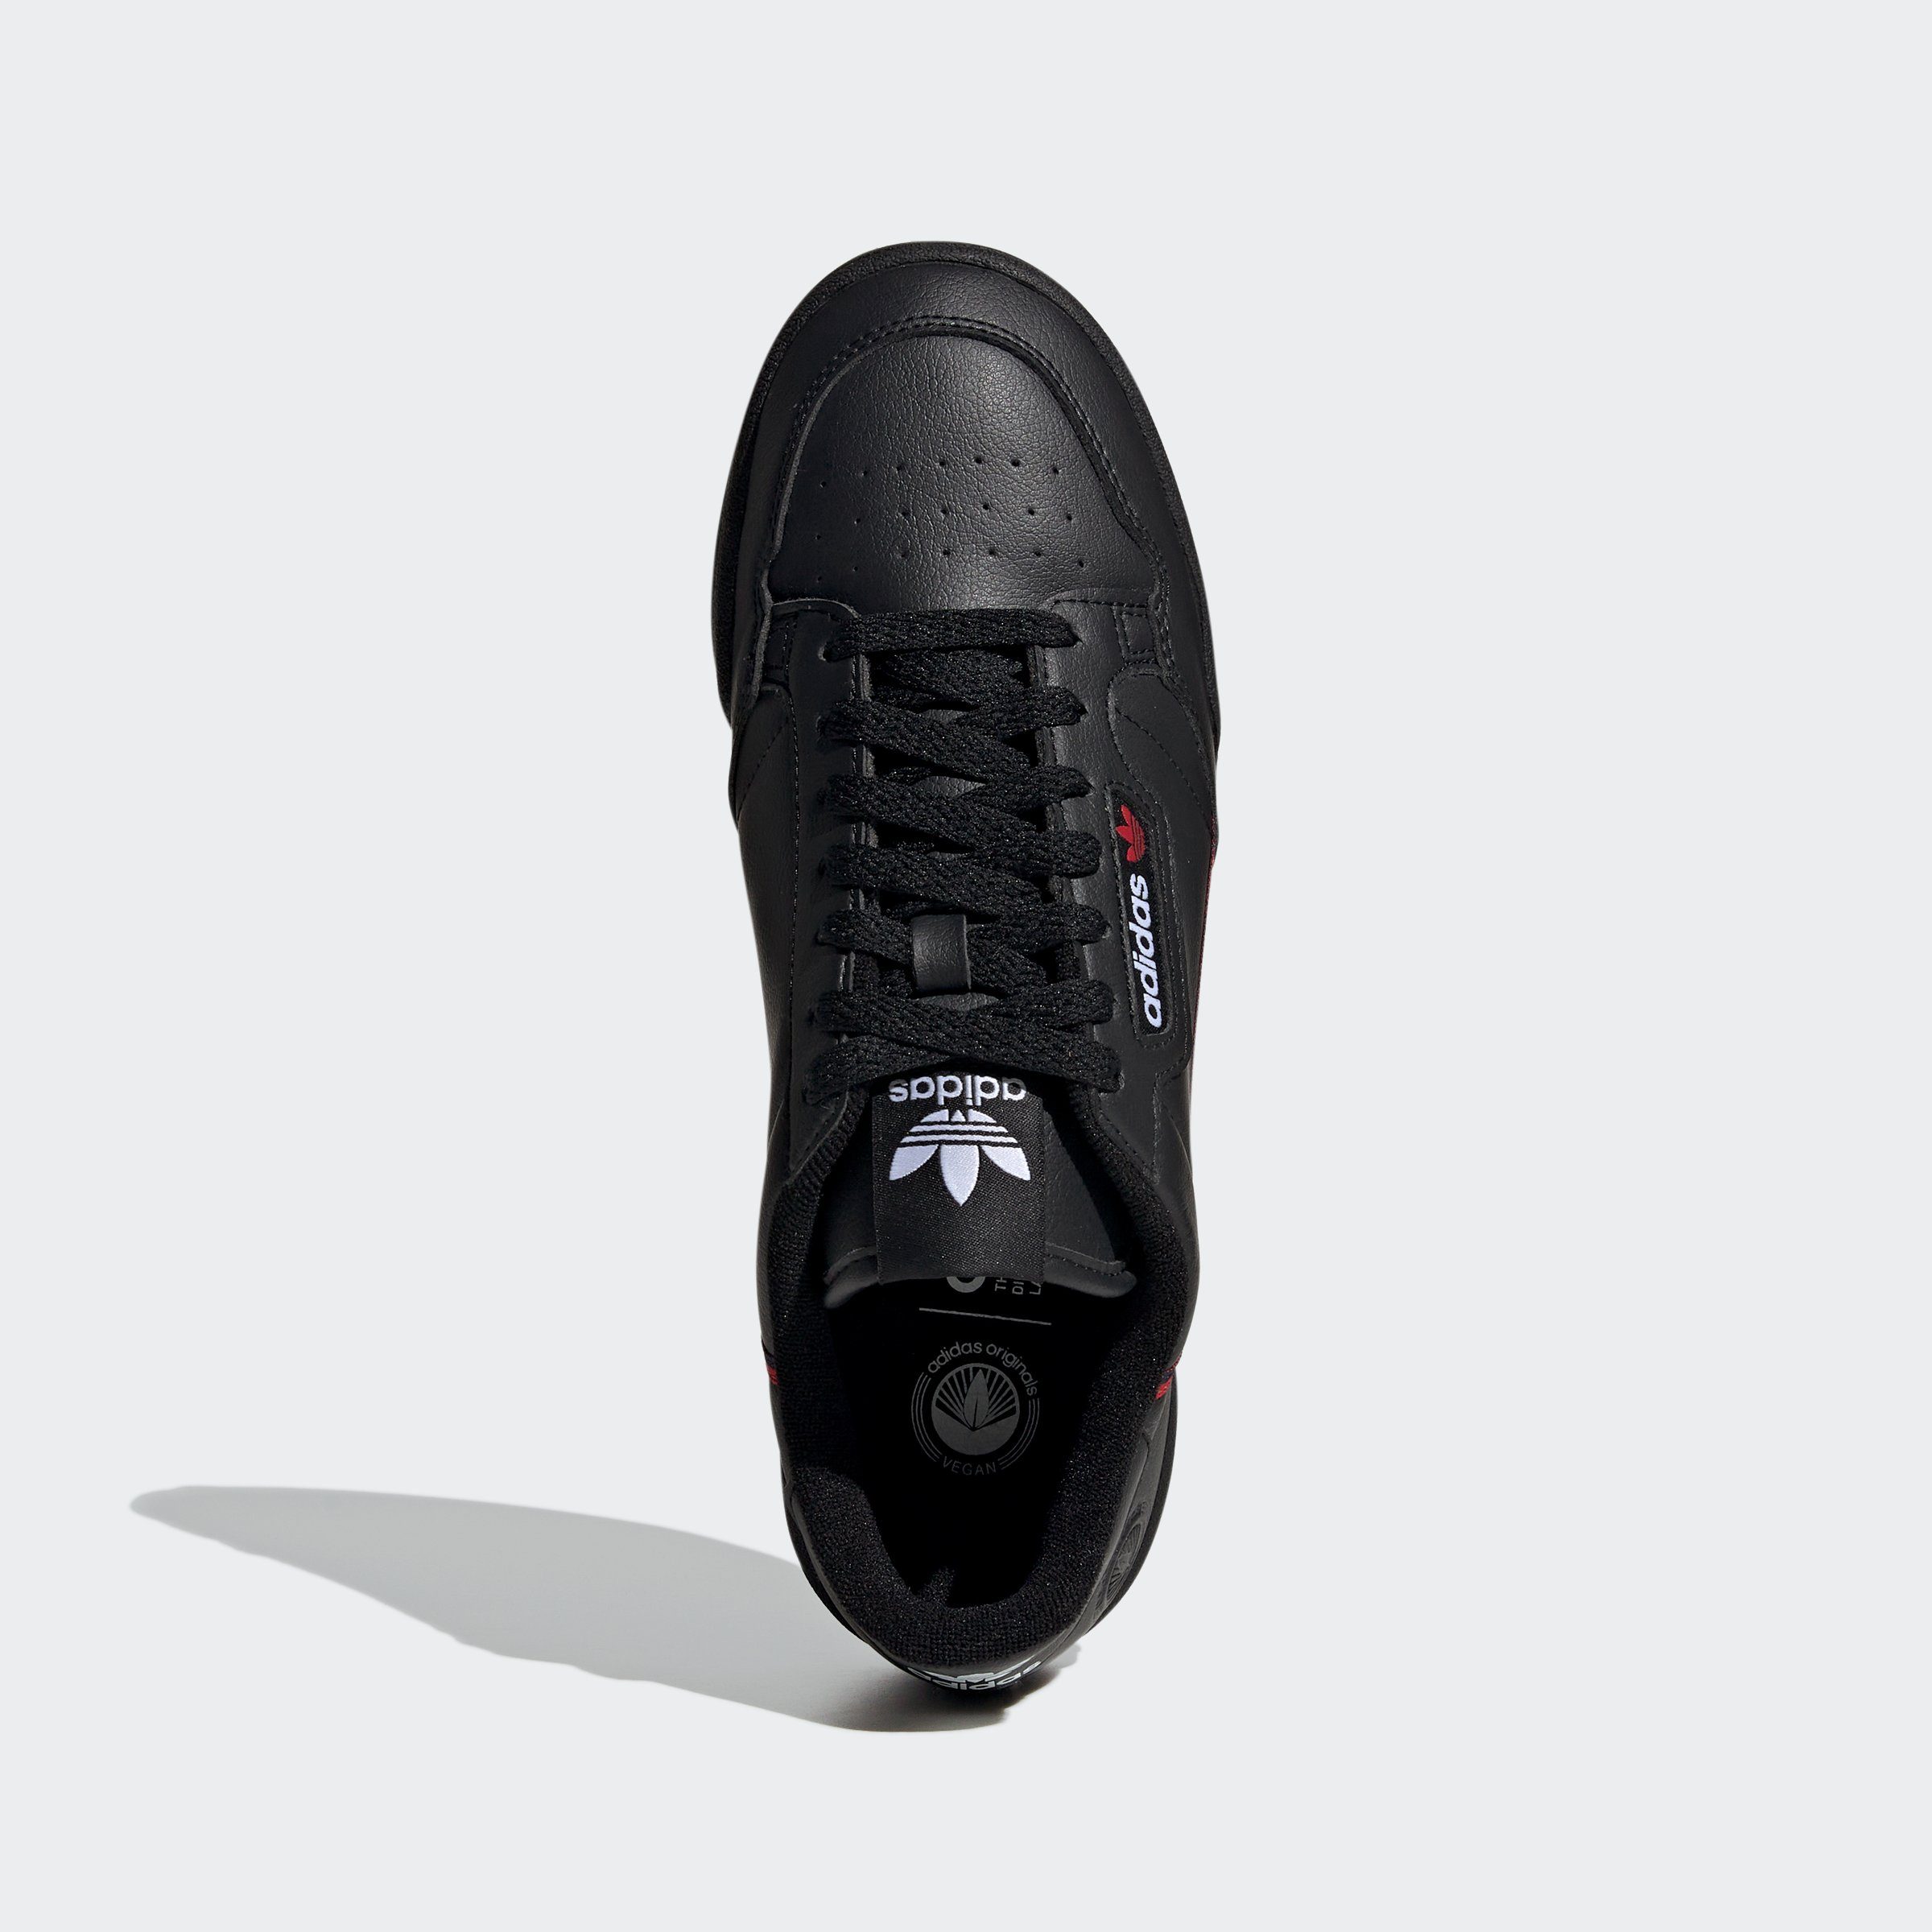 CBLACK-CONAVY-SCARLE CONTINENTAL Sneaker 80 VEGAN adidas Originals